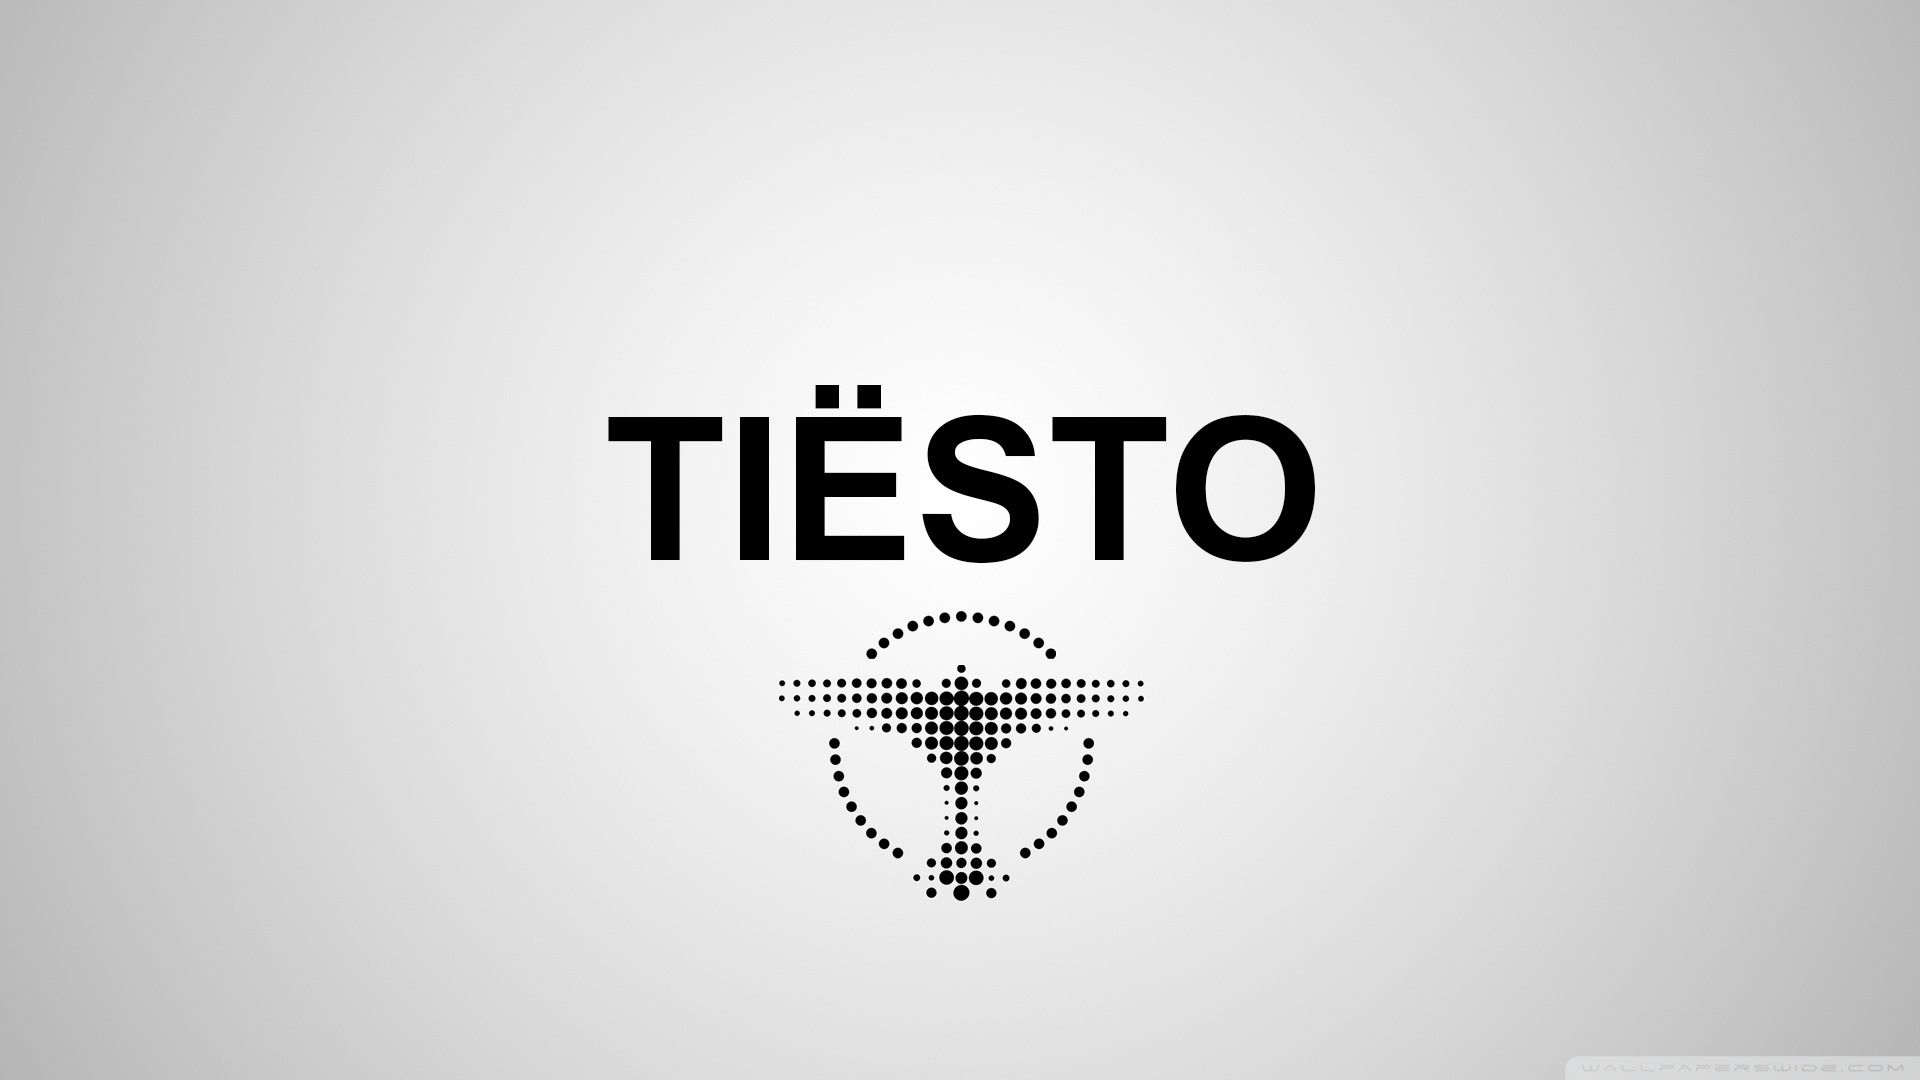 Tiesto Wallpaper - FunDJStuff.com